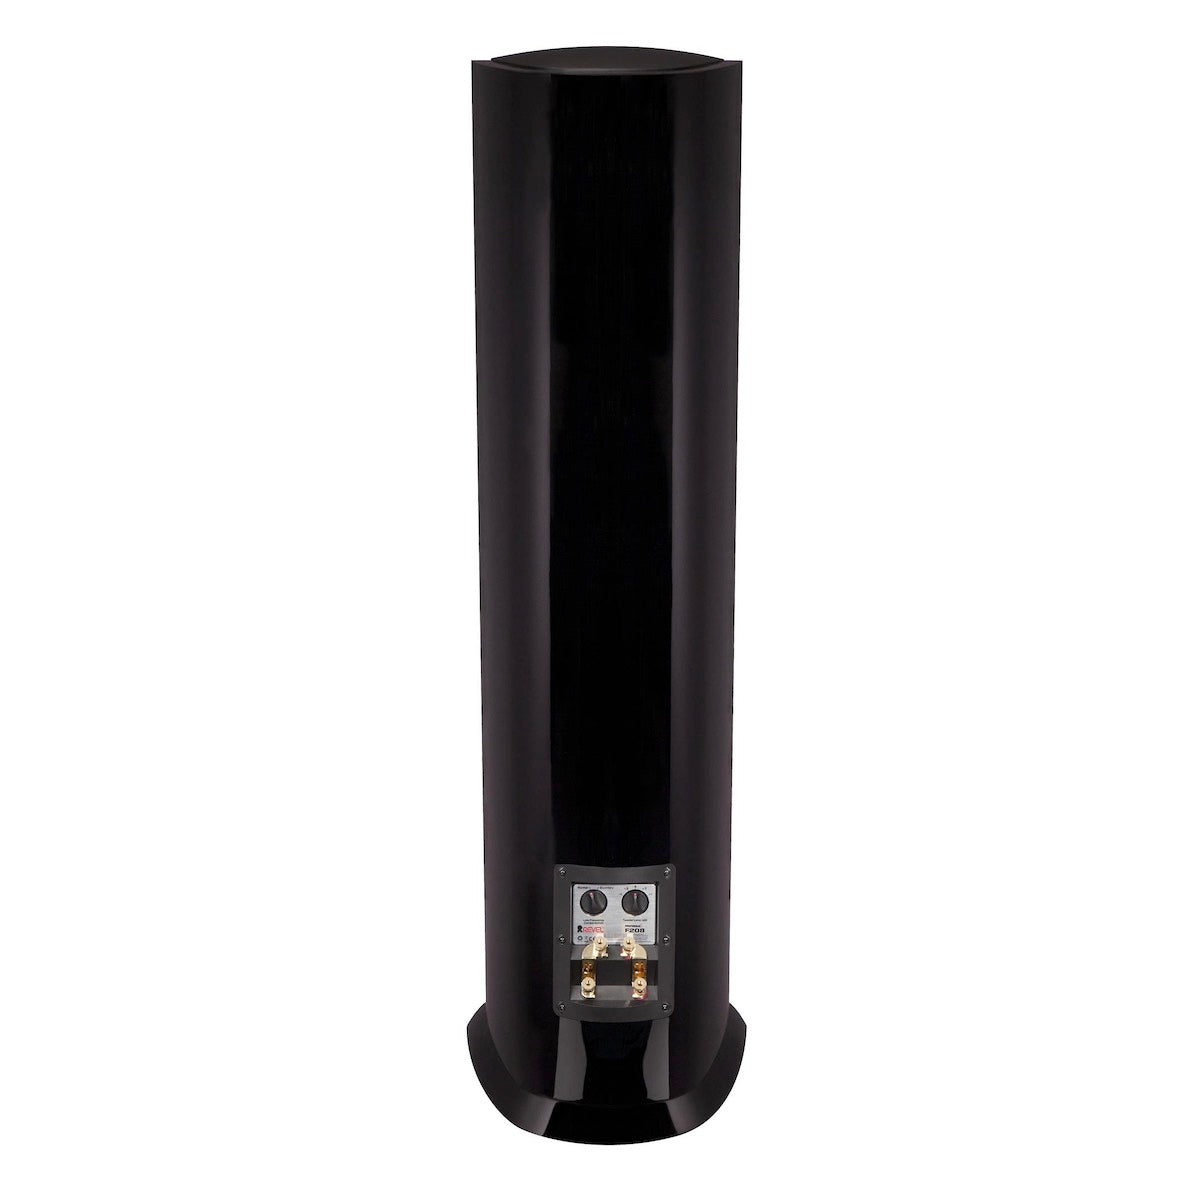 Revel Performa3 F208 - Floor Standing Speaker (Pair) - AVStore